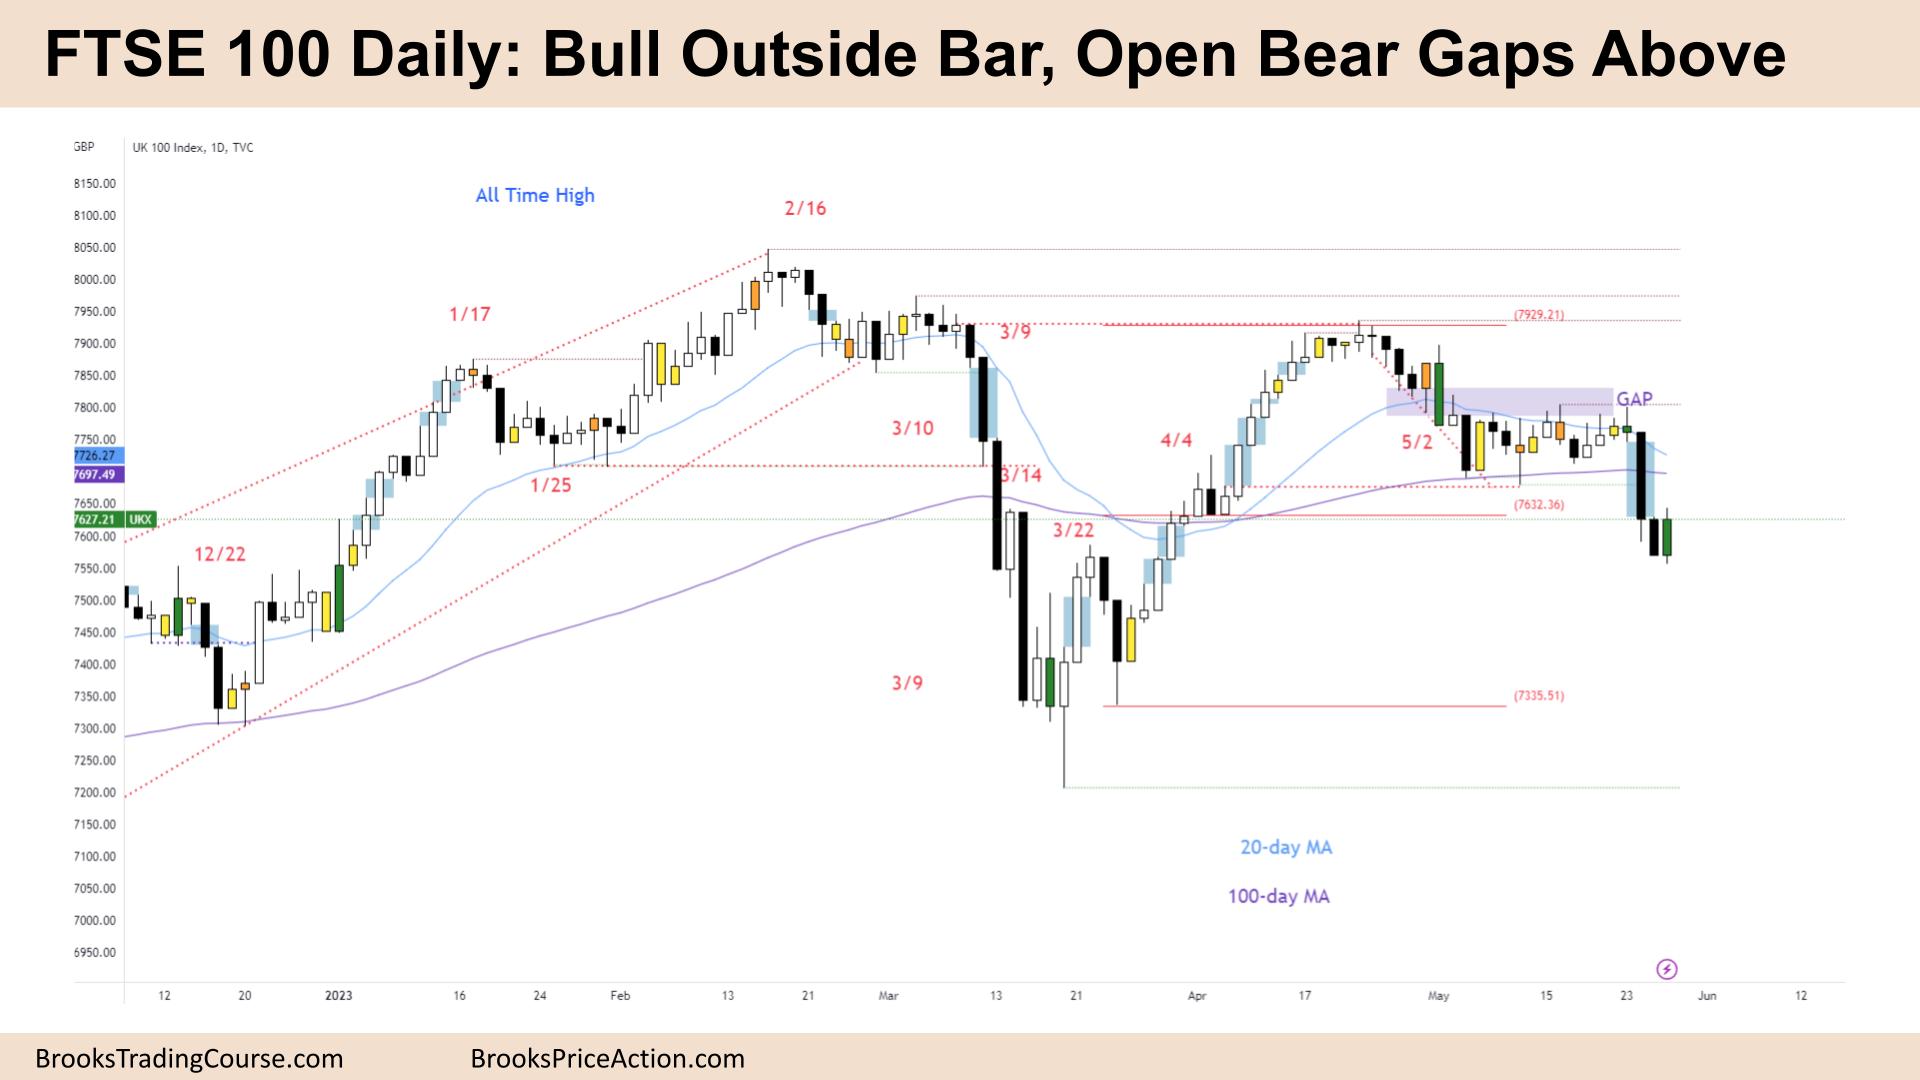 FTSE 100 Bull Outside Bar, Open Bear Gaps Above